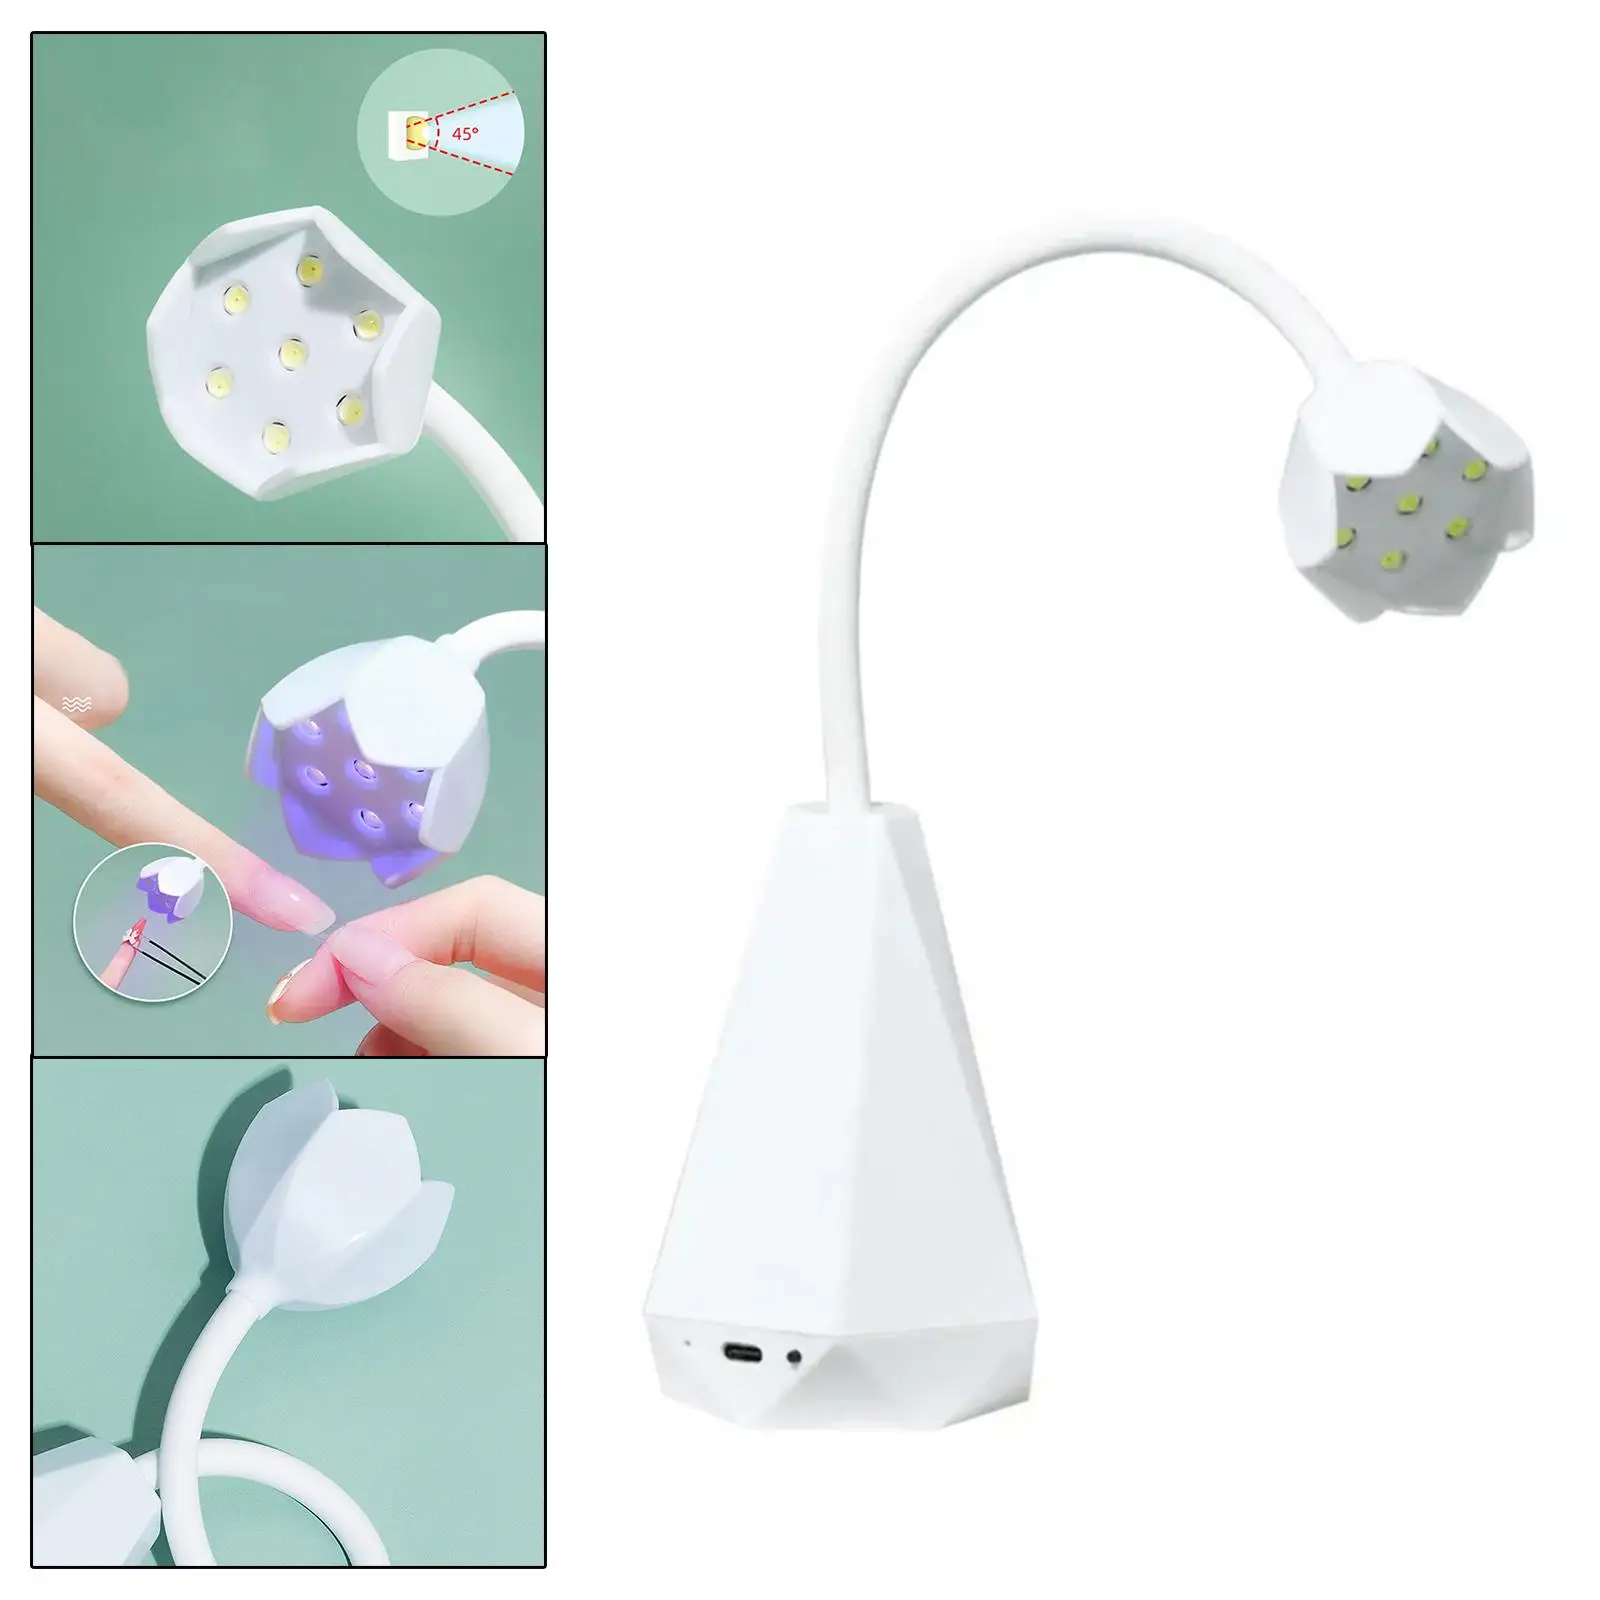 LED Nail Drying Lamp Rotatable Nail Polish Curing Lamp Nail Dryer Curing Lamps Hands Free Flexible Desk Lamps for Home DIY